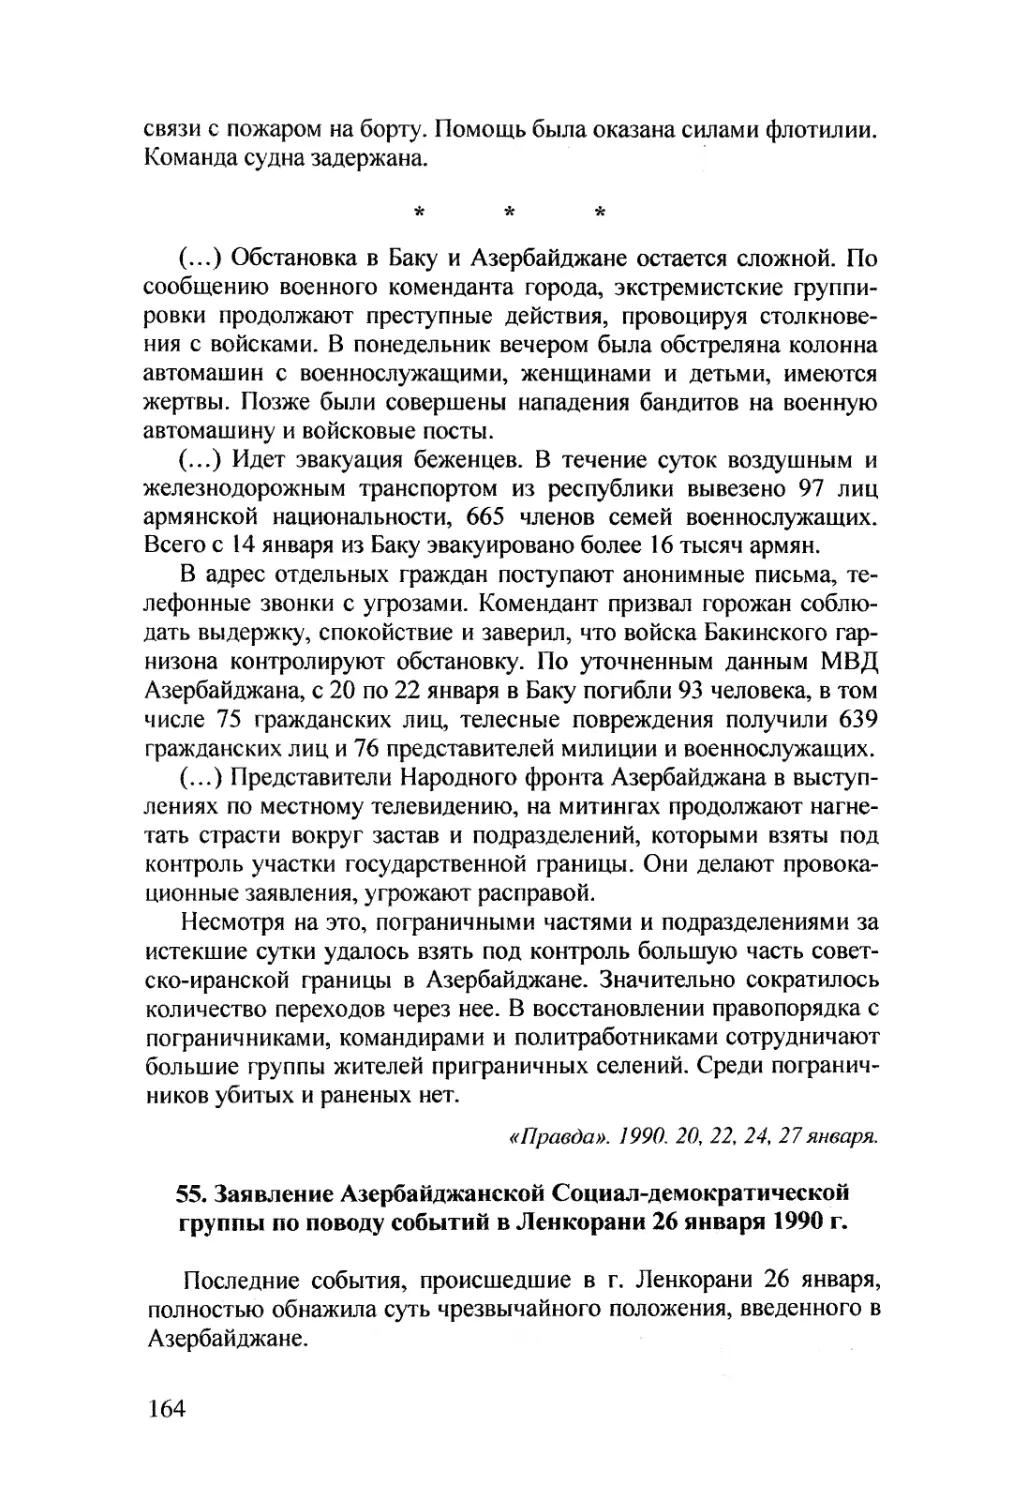 55. Заявление Азербайджанской Социал-демократической группы по поводу событий в Ленкорани 26 января 1990 г